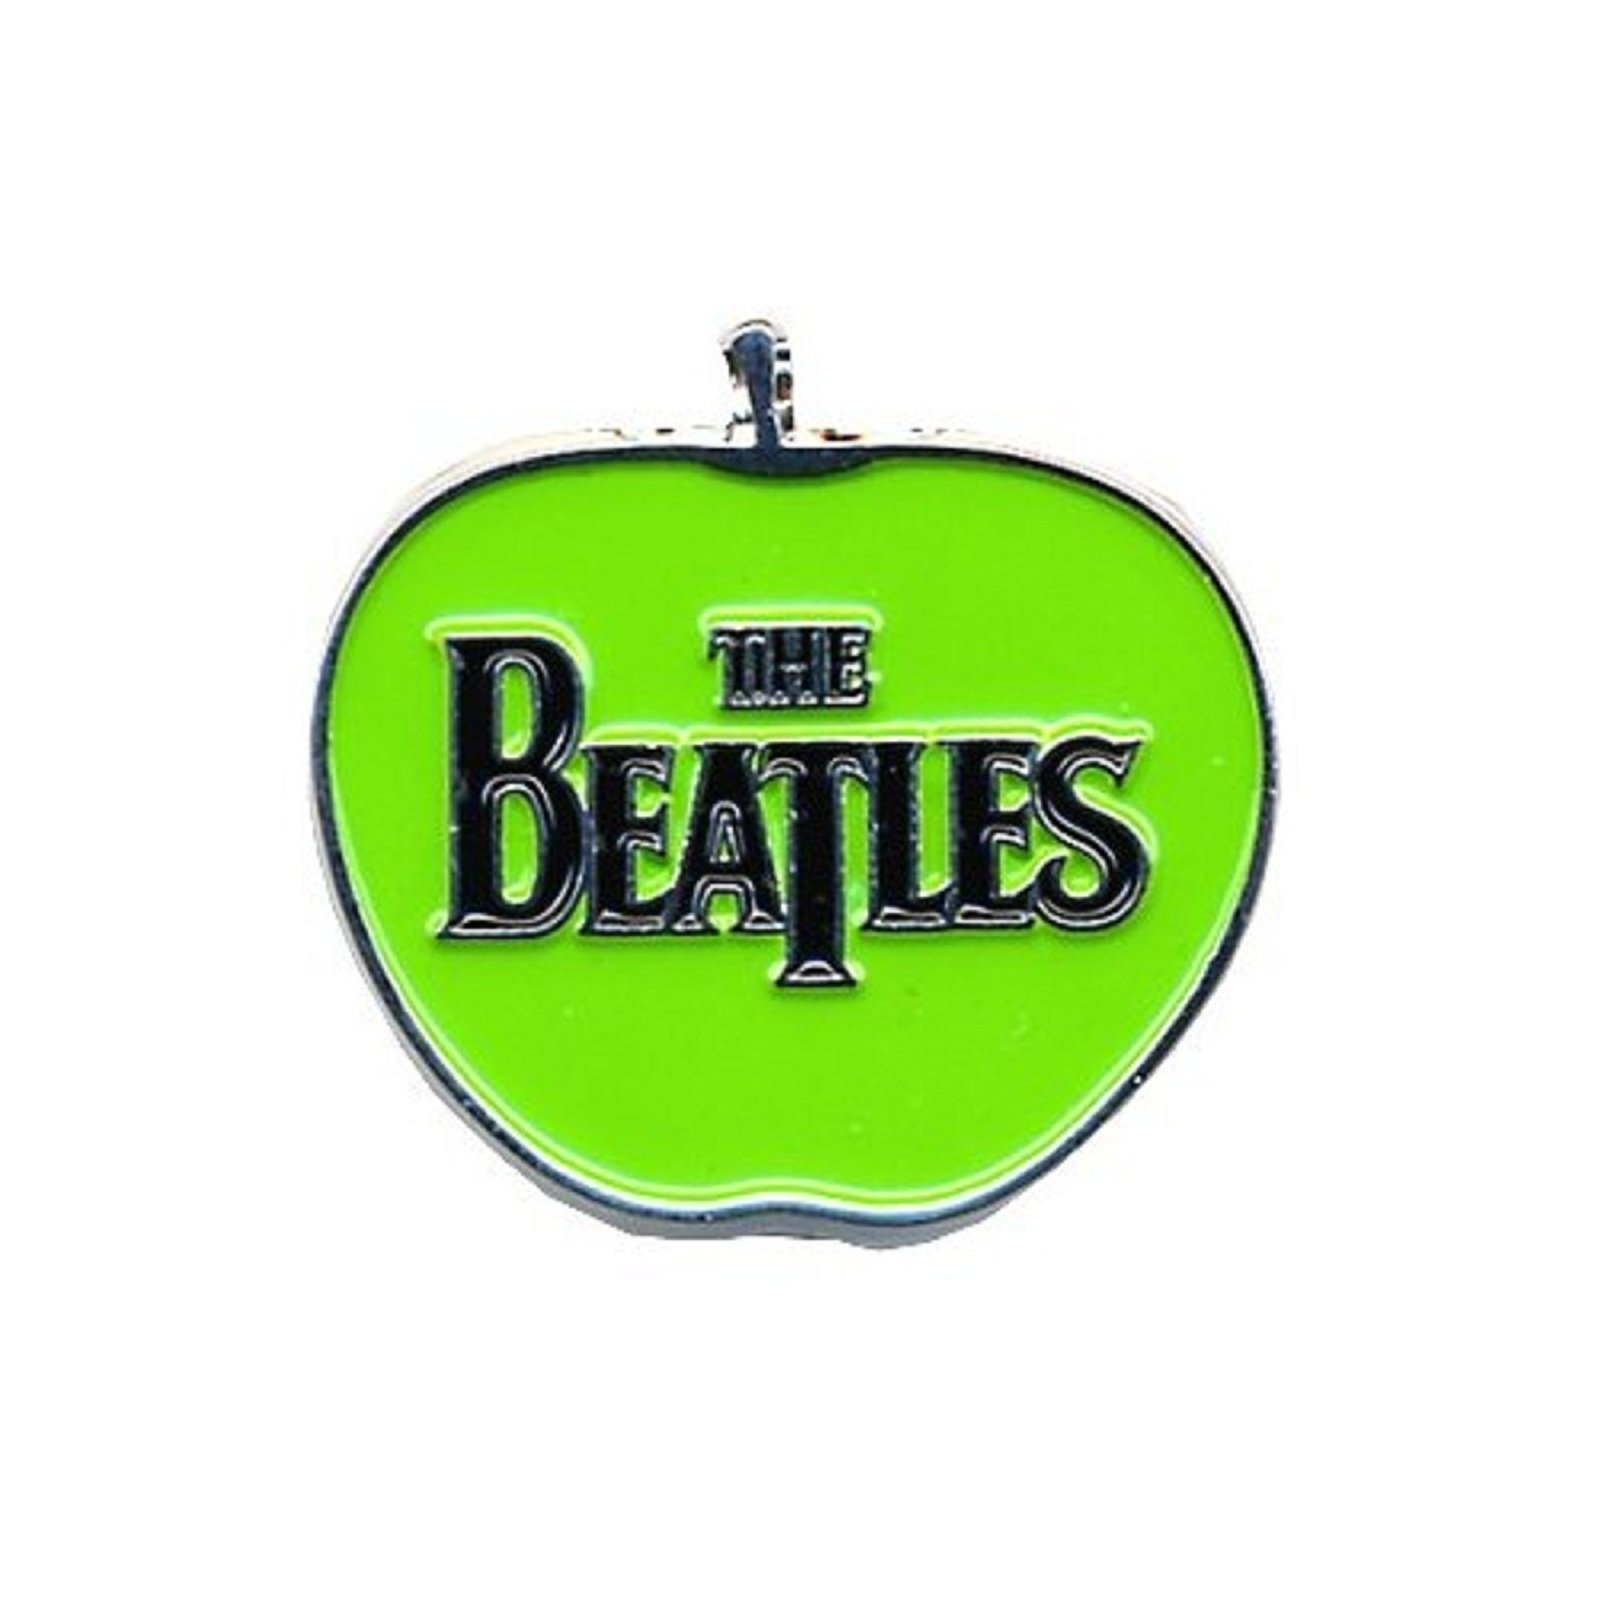 (ビートルズ) The Beatles オフィシャル商品 ロゴ Apple バッジ 【海外通販】